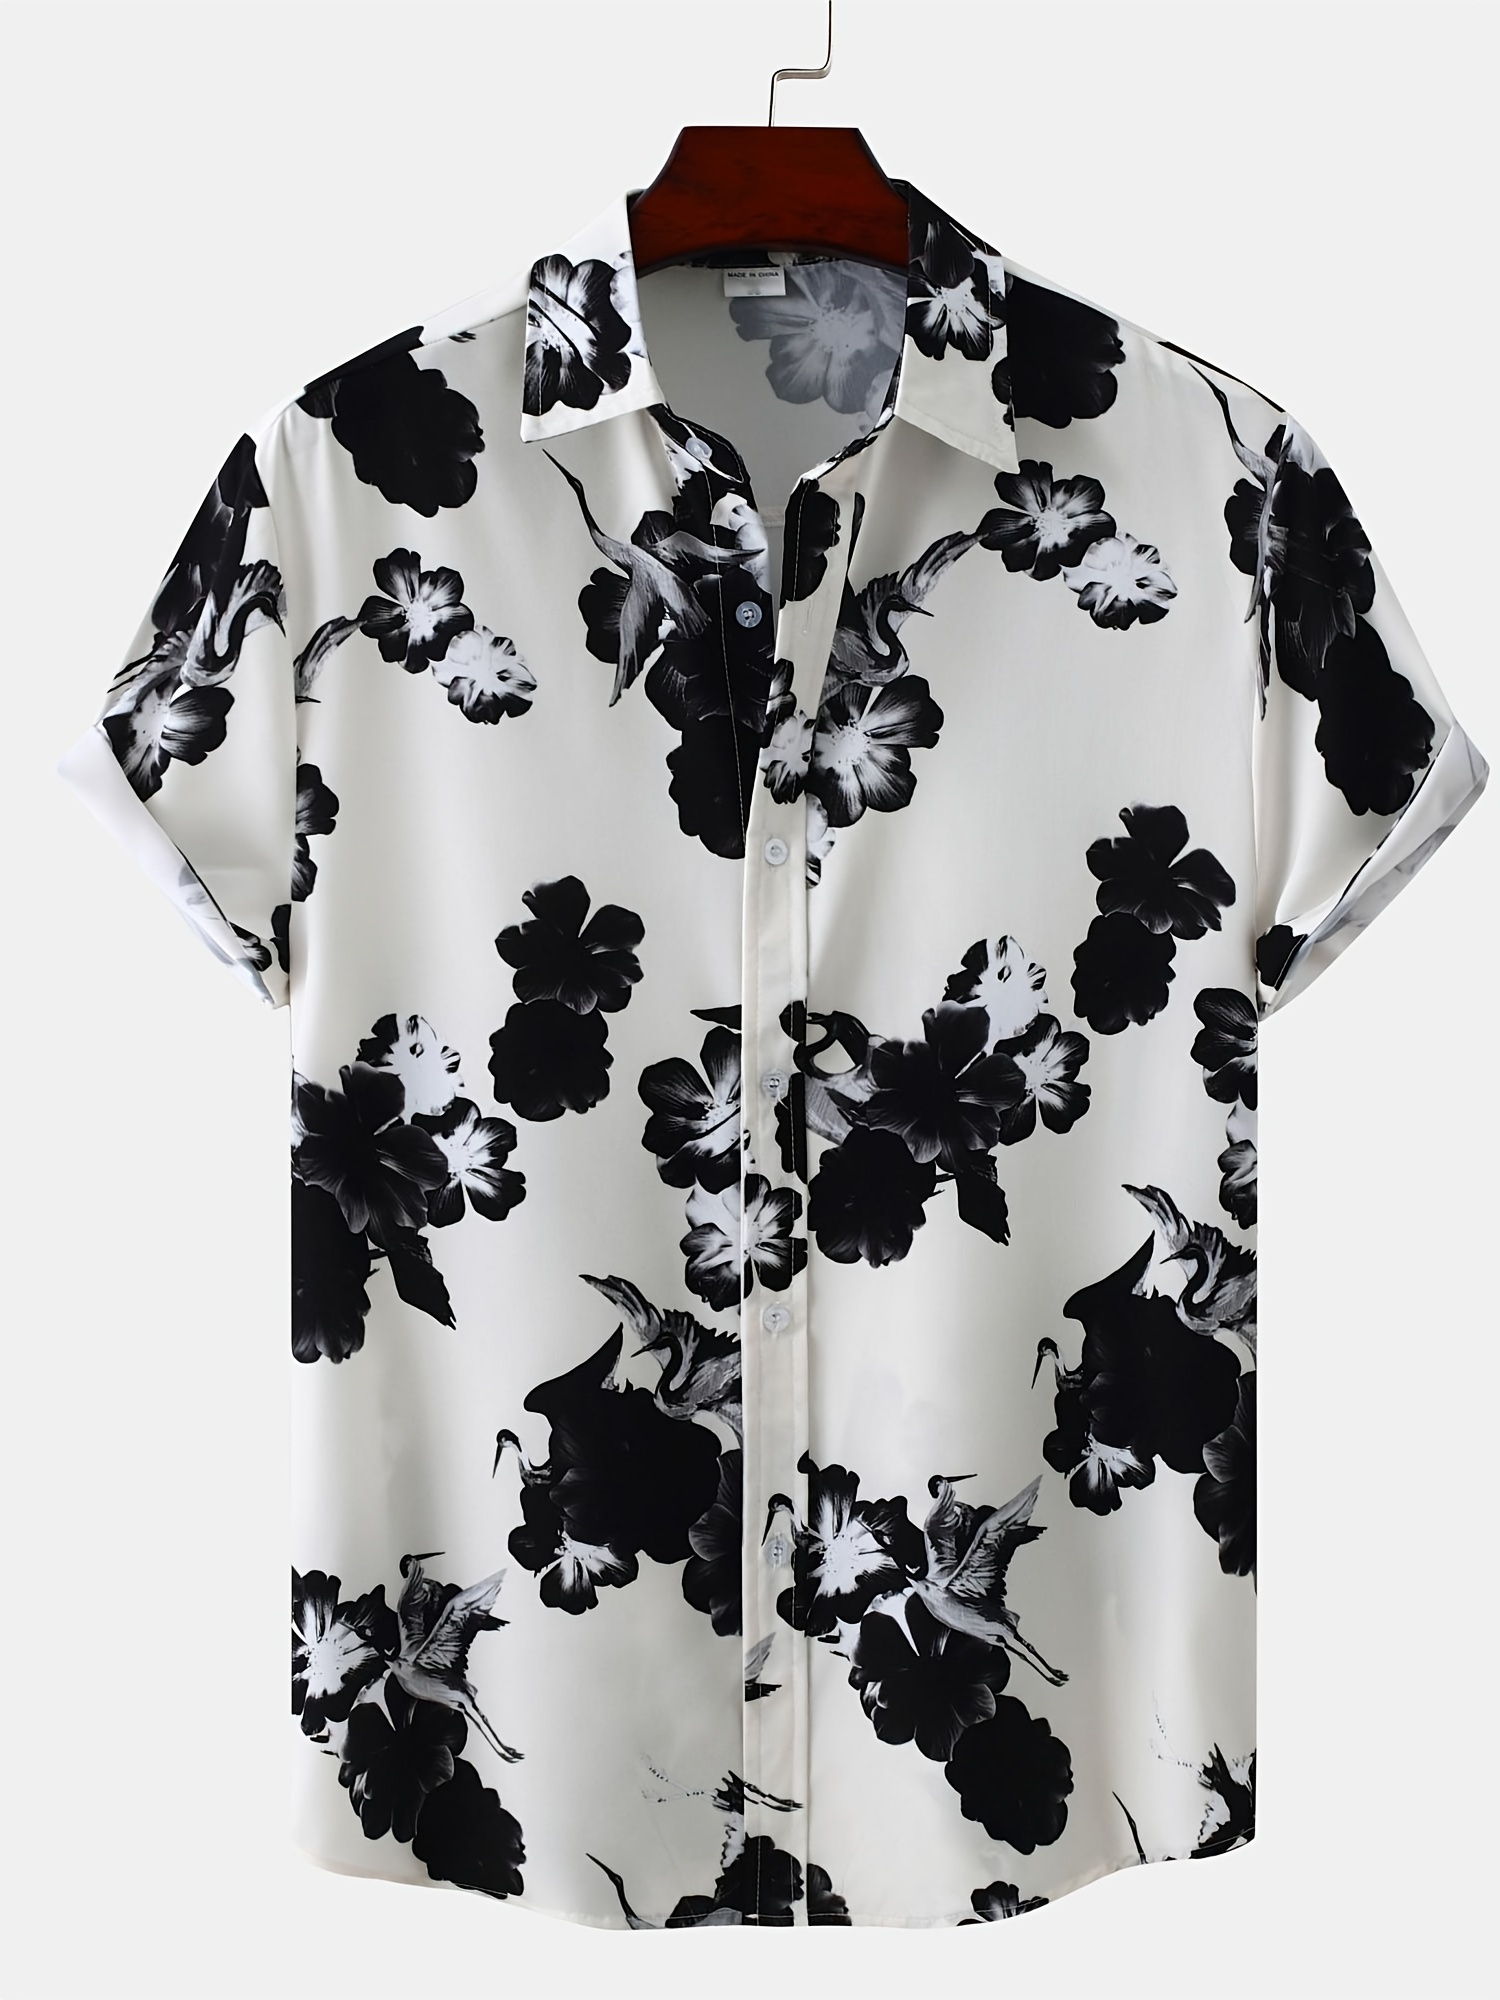 Oversized Shirt, Men's Flowers Print Short Sleeve Shirt Oversized Tops For  Summer, Men's Clothing, Plus Size